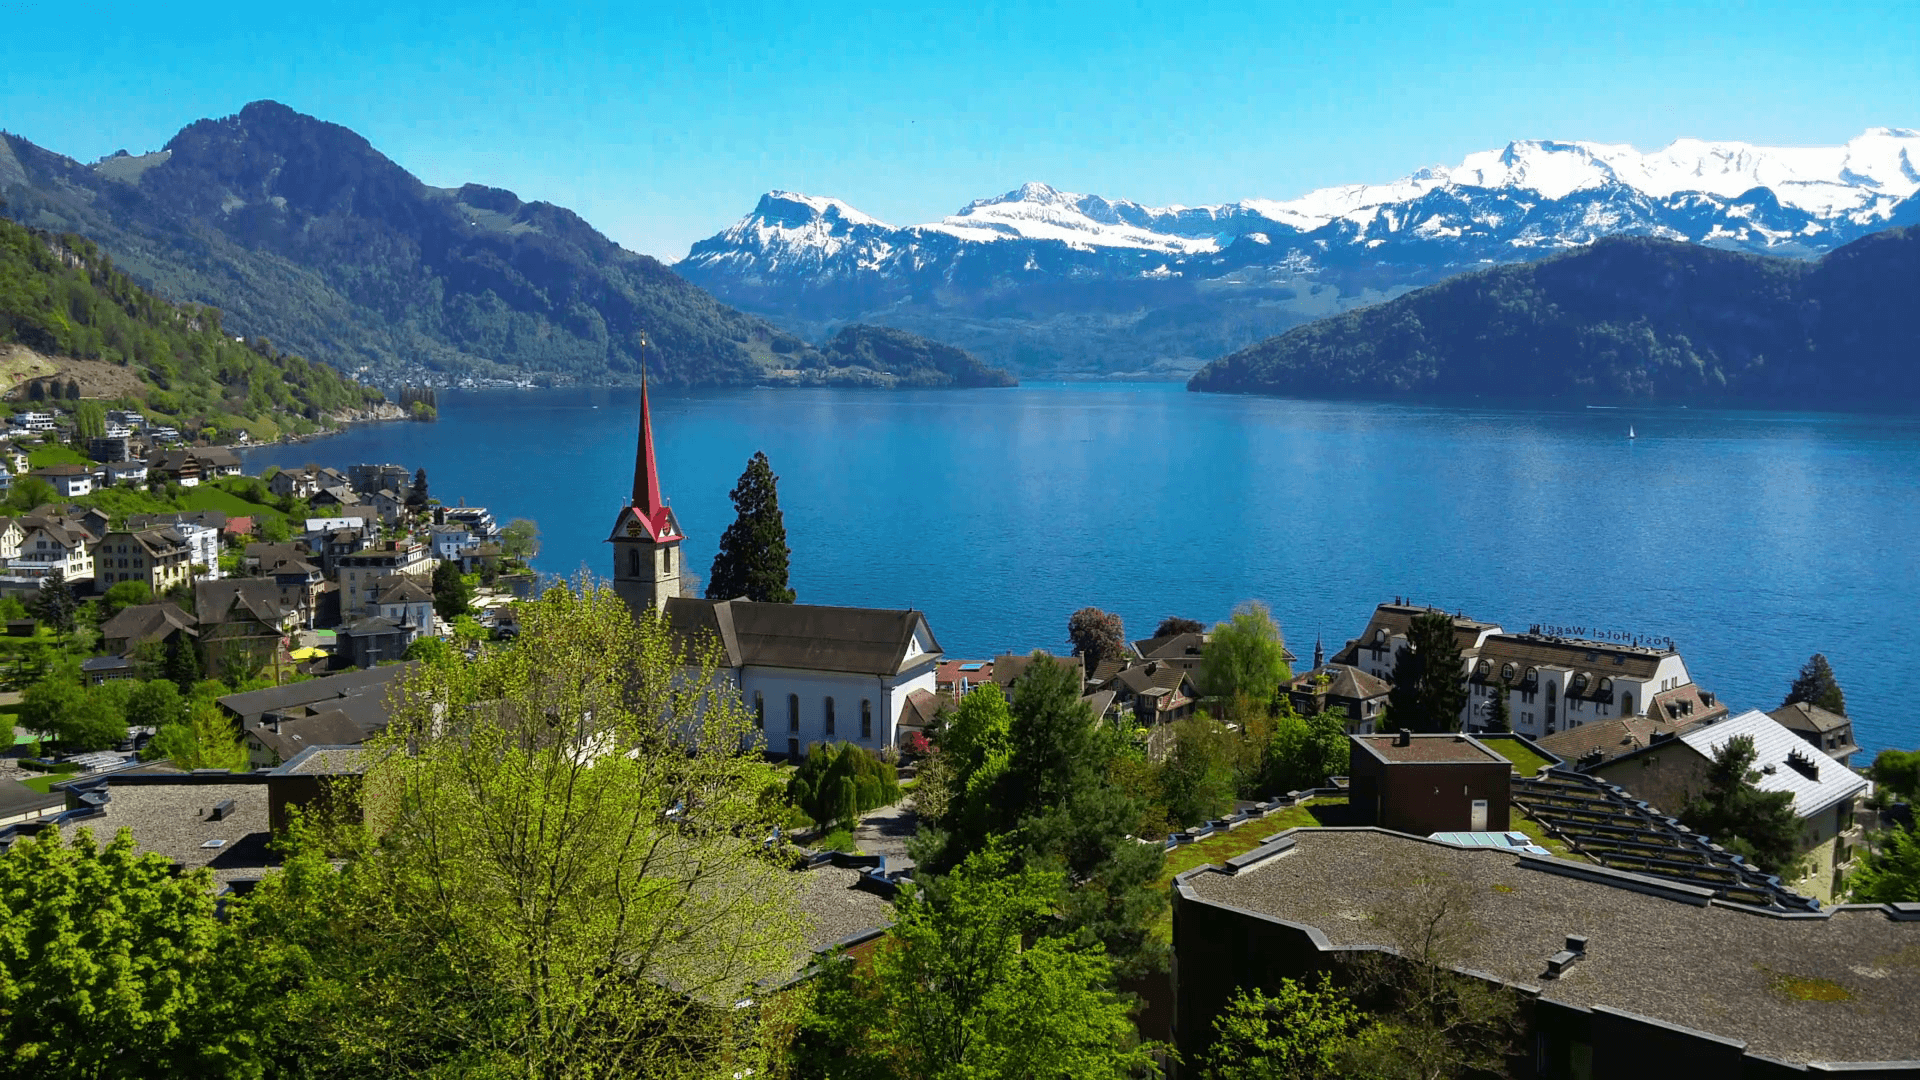 View to village Weggis, lake Lucerne (Vierwaldstatersee), Pilatus